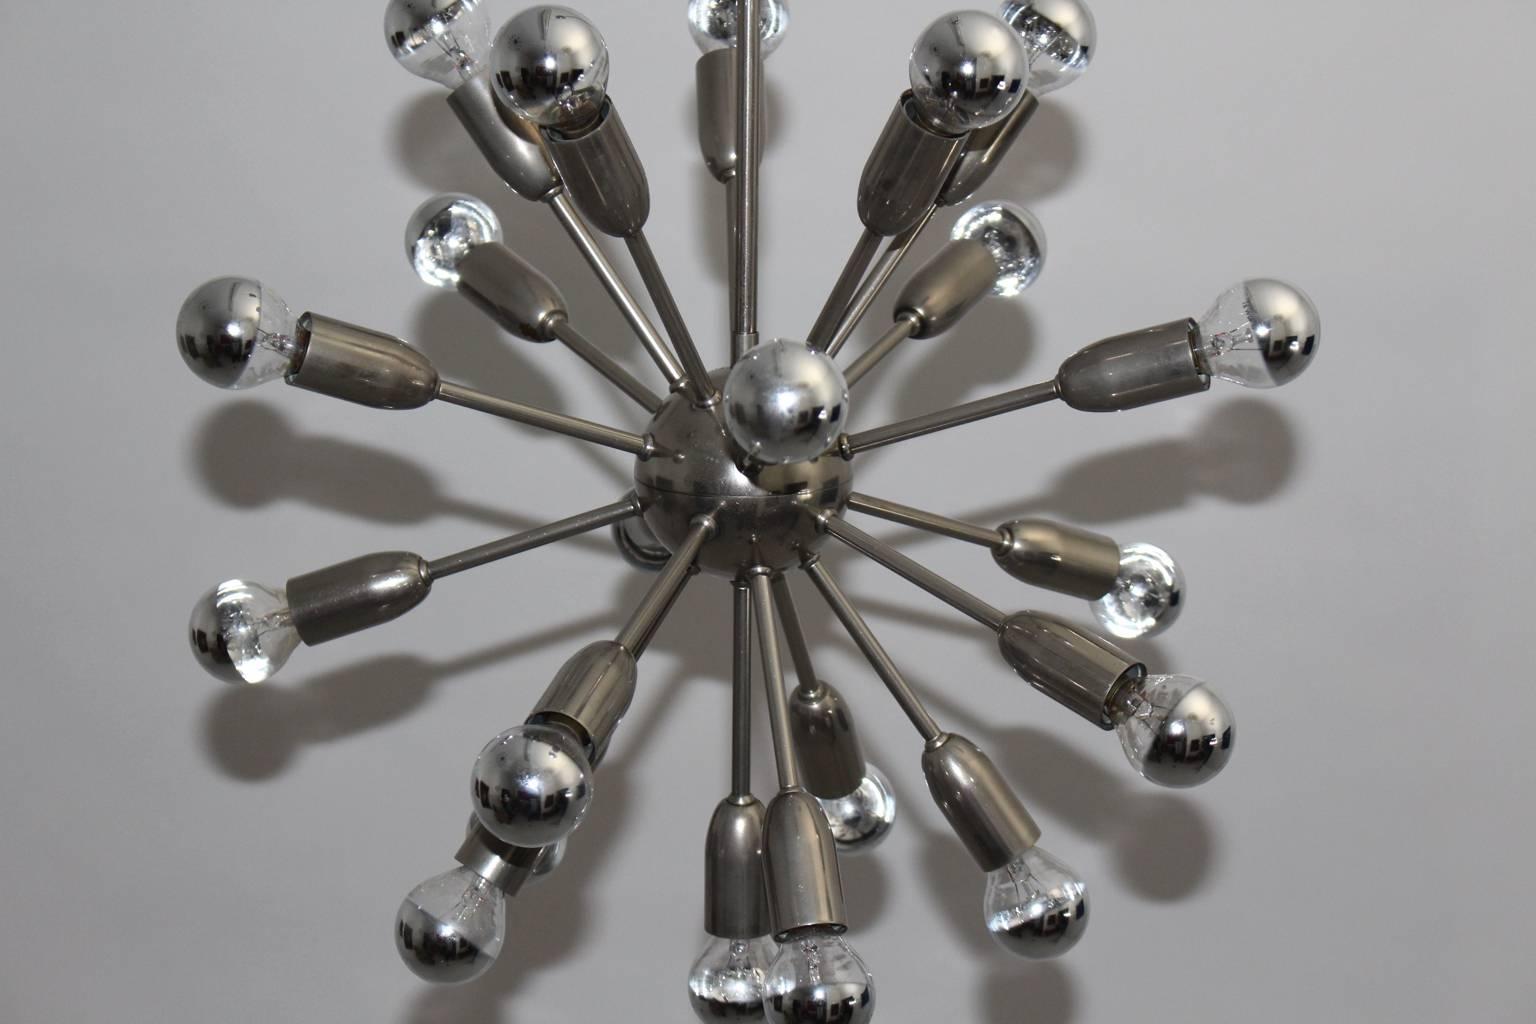 Mid Century Modern vernickeltes Metall Sputnik Kronleuchter mit 21 Armen, die 1960er Jahre Italien entworfen wurde.
Metallfassungen mit runden verchromten Glühbirnen E 14.

Abmessungen:
Durchmesser: 50 cm (19,68 Zoll),
Höhe 77 cm (30,31 Zoll).
Alle